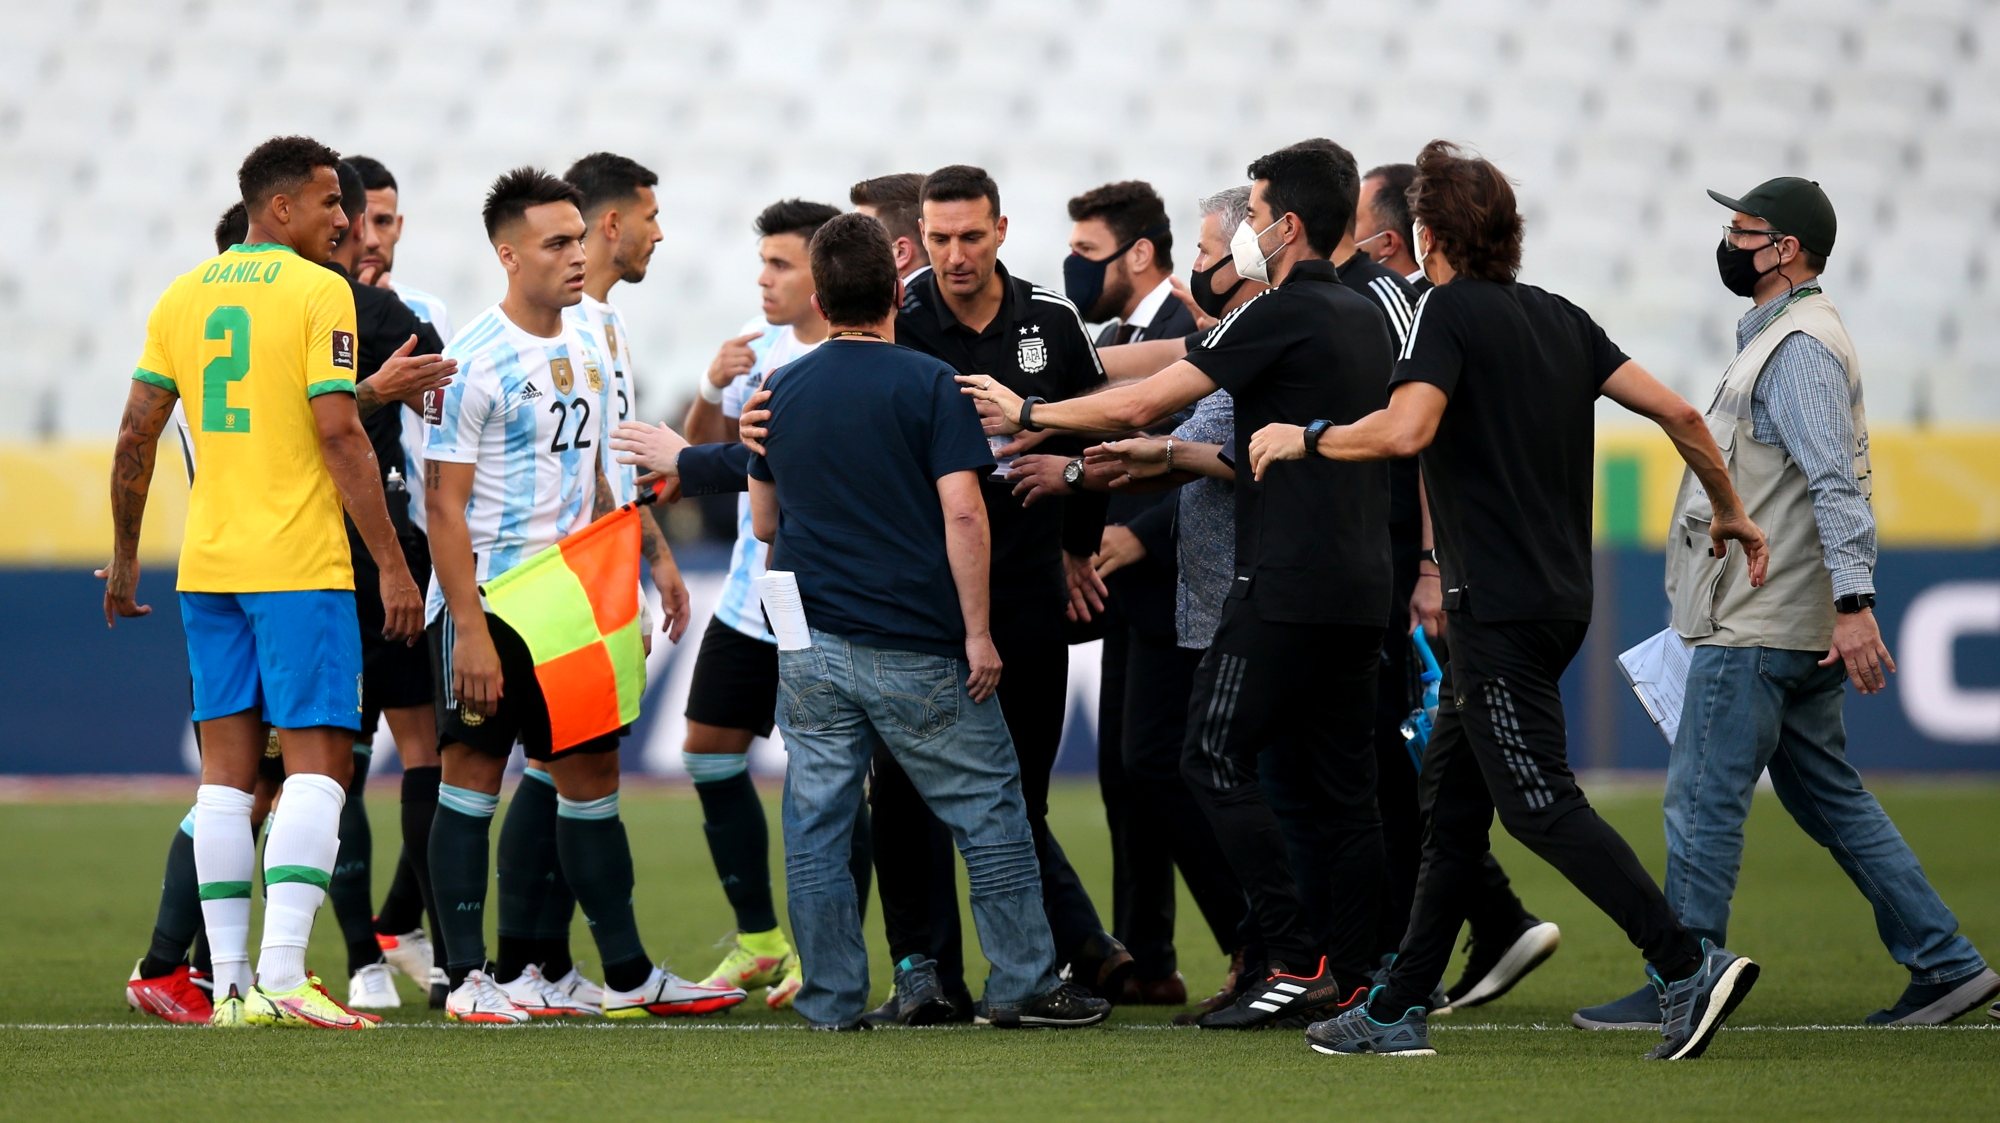 Elementos da Agência Nacional de Vigilância Sanitária do Brasil entraram em campo pouco depois do início do jogo e Argentina saiu de campo